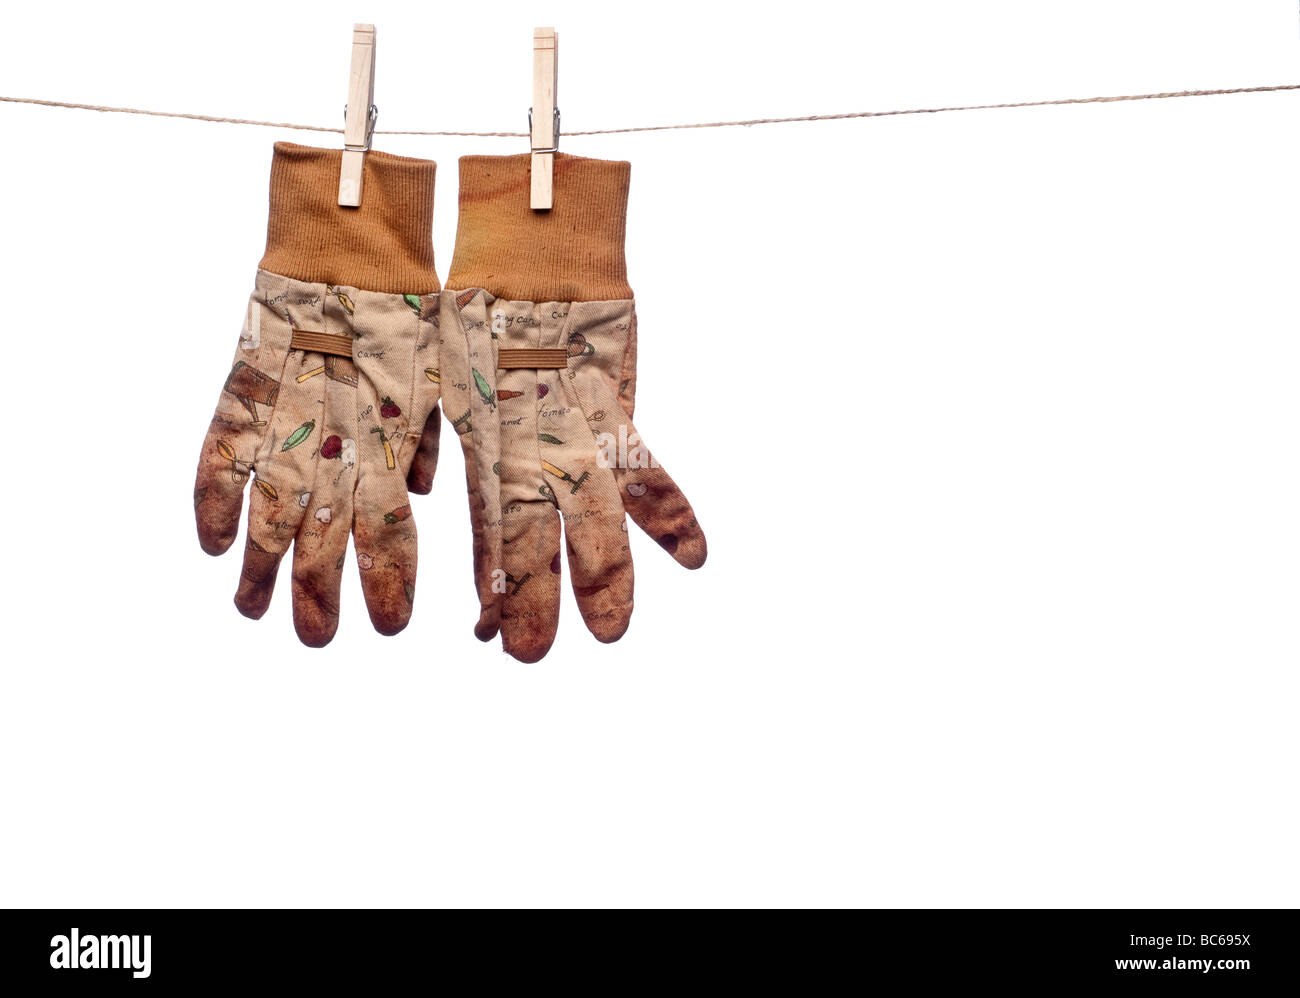 Une image horizontale des gants de travail jardin sale accroché sur une corde à linge Banque D'Images